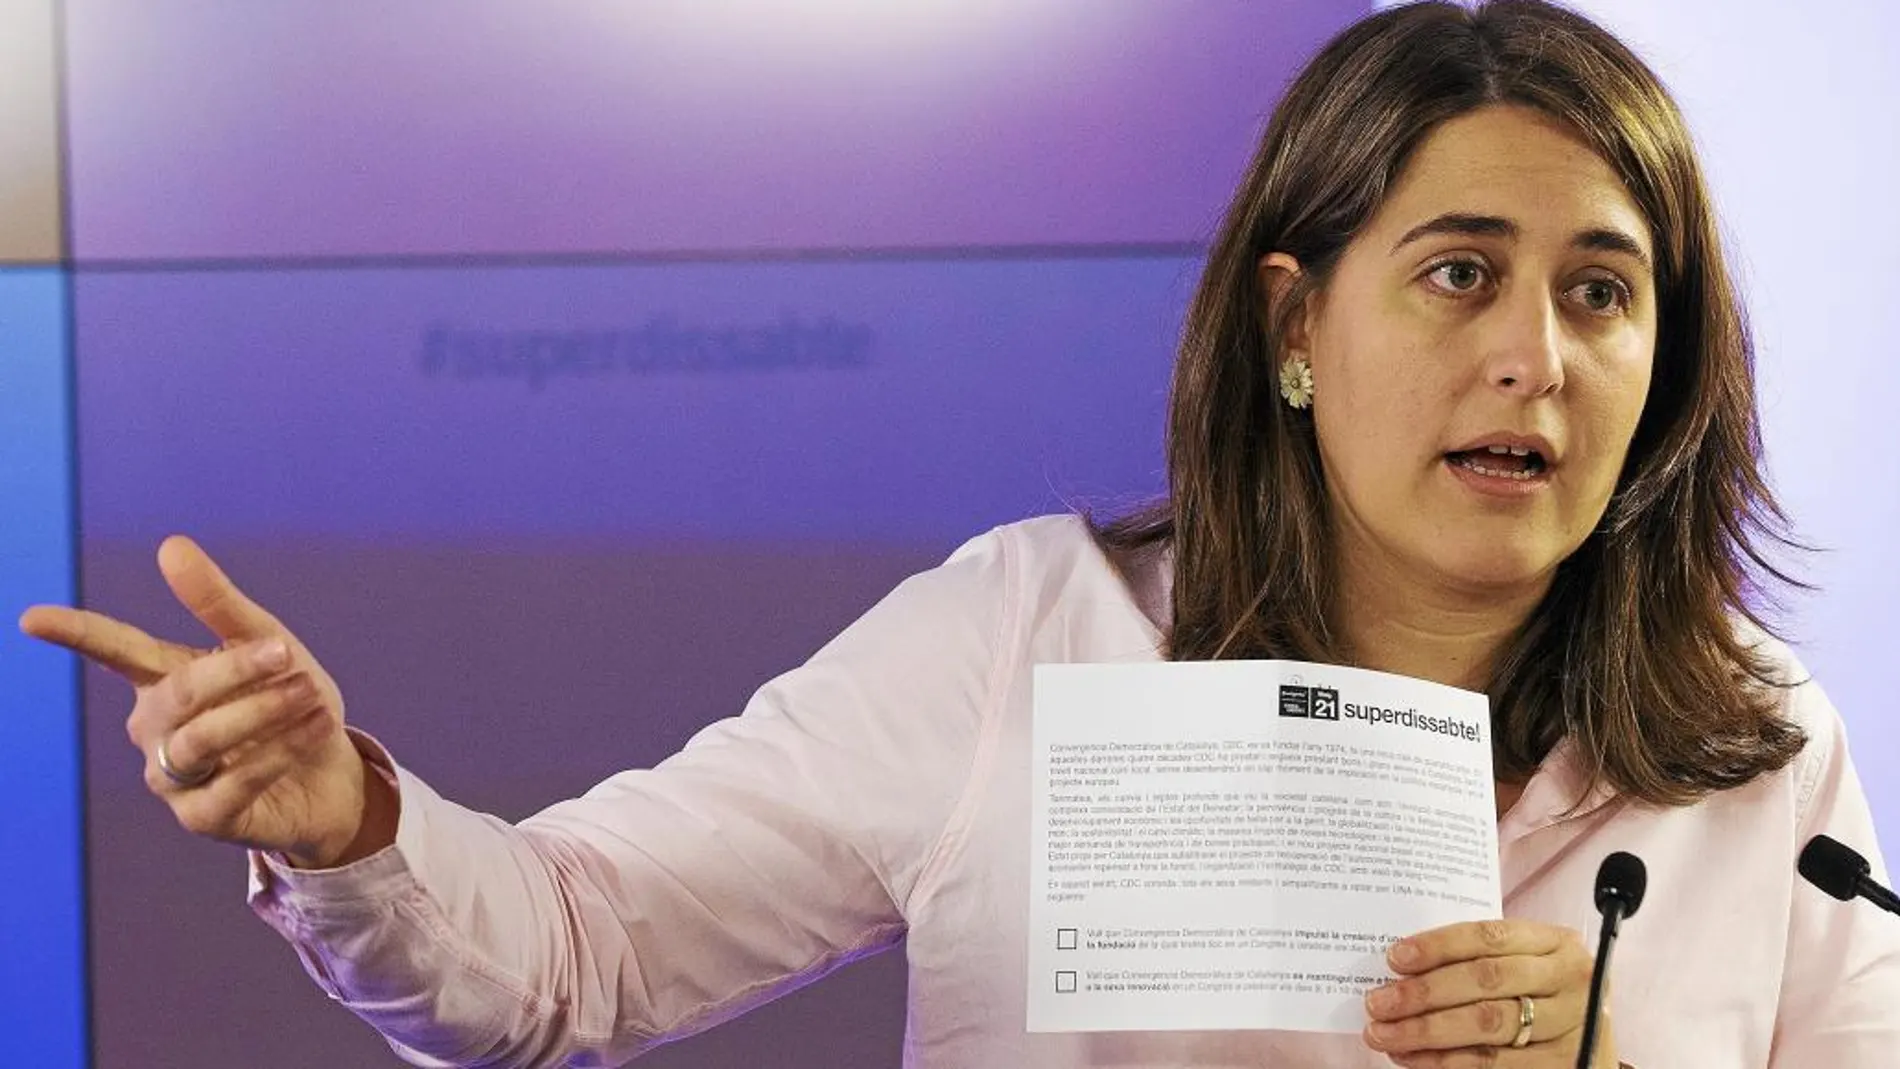 Marta Pascal, llamada a ser coordinadora general del Partit Demòcrata Català, era portavoz de CDC